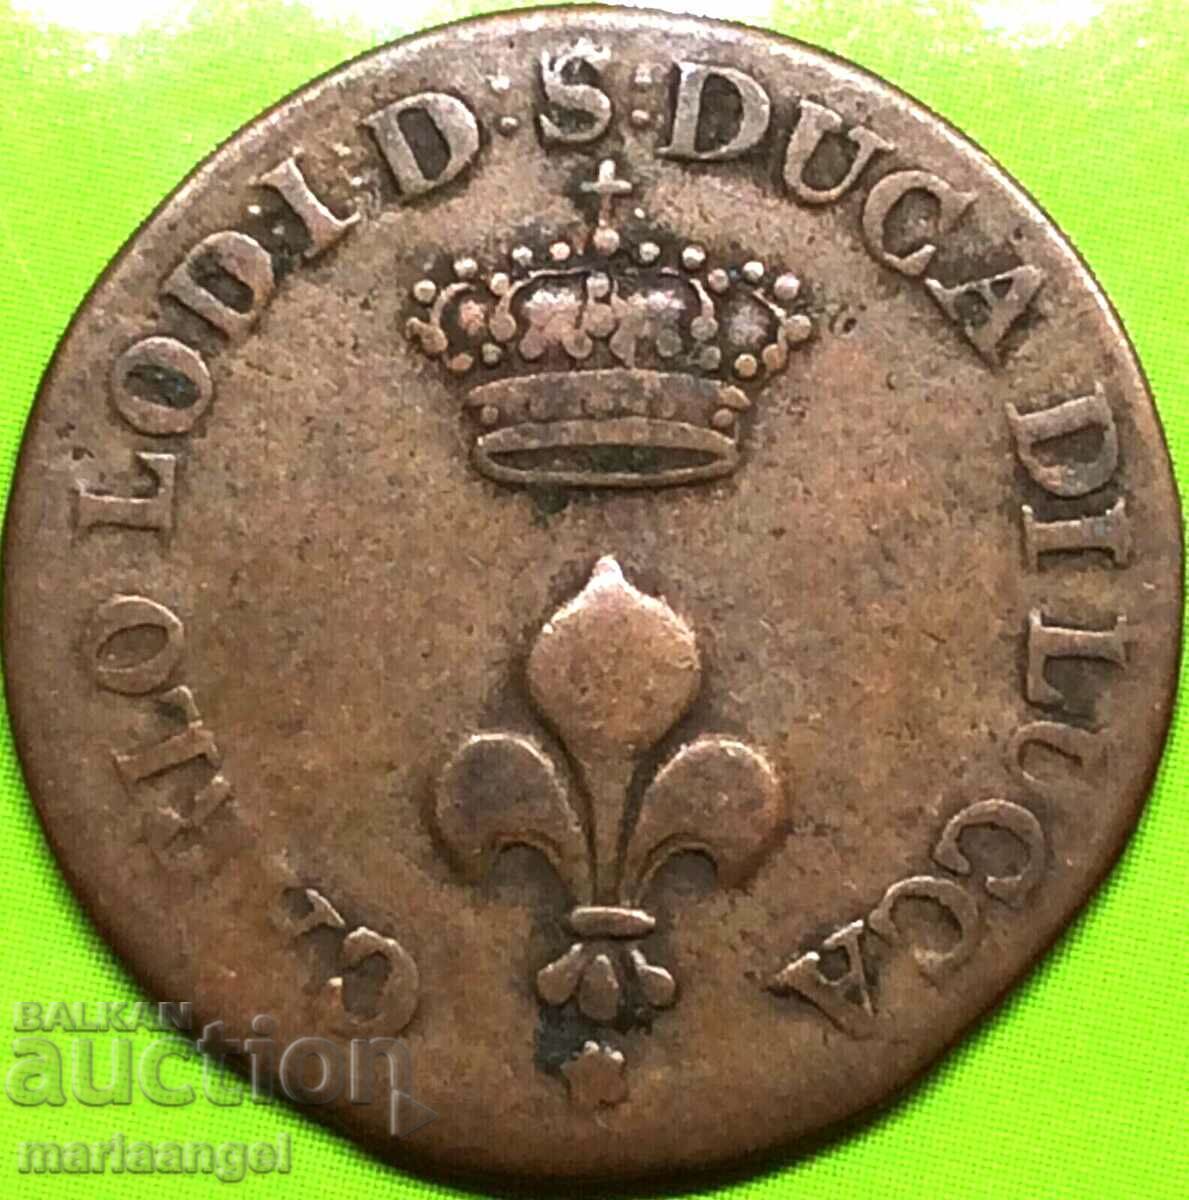 Luca 1 soldo 1841 Italy copper - quite rare